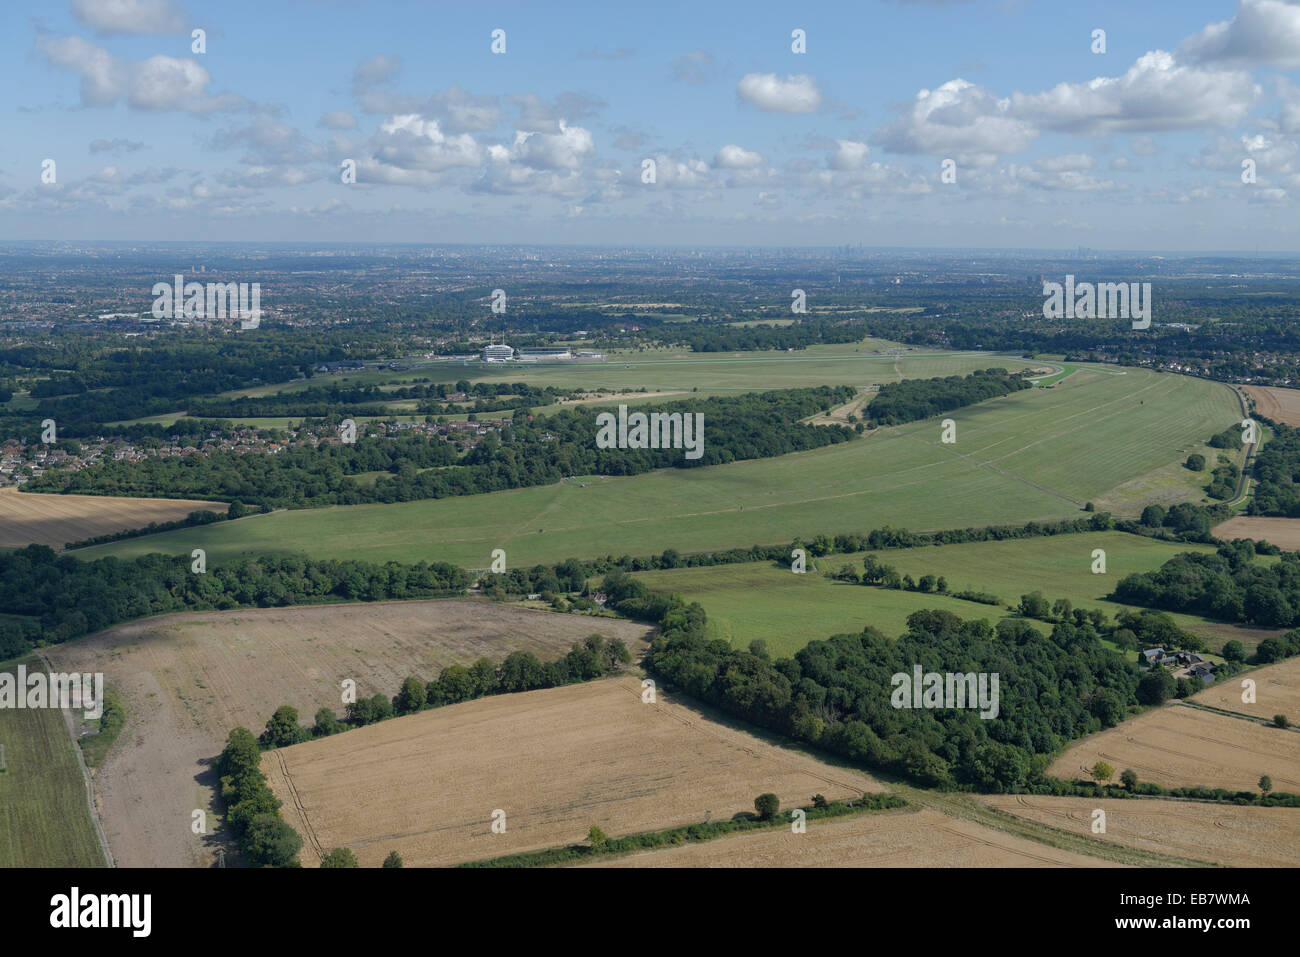 Una veduta aerea di Epsom Downs con l'ippodromo visibile e gli alti edifici di Londra in distanza Foto Stock